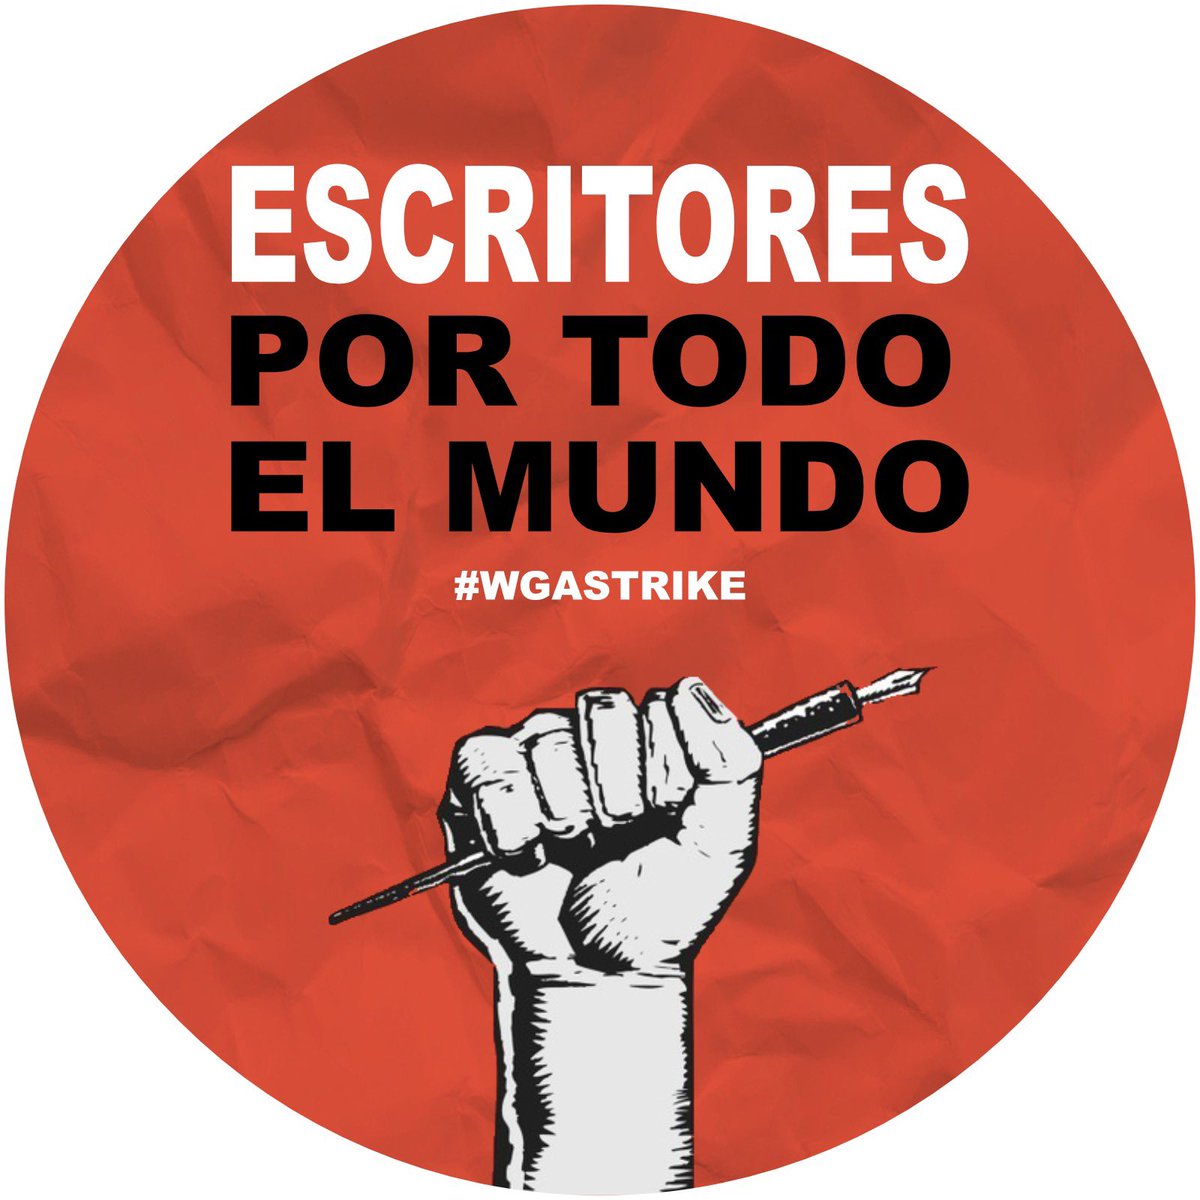 #GuionistasPorTodasPartes #ScreenwritersEverywhere #WGAStrike #WGAStrong #GuionistasEneEspañol #NoSeEscribenSolas #Solidaridad #SOLIDARITY